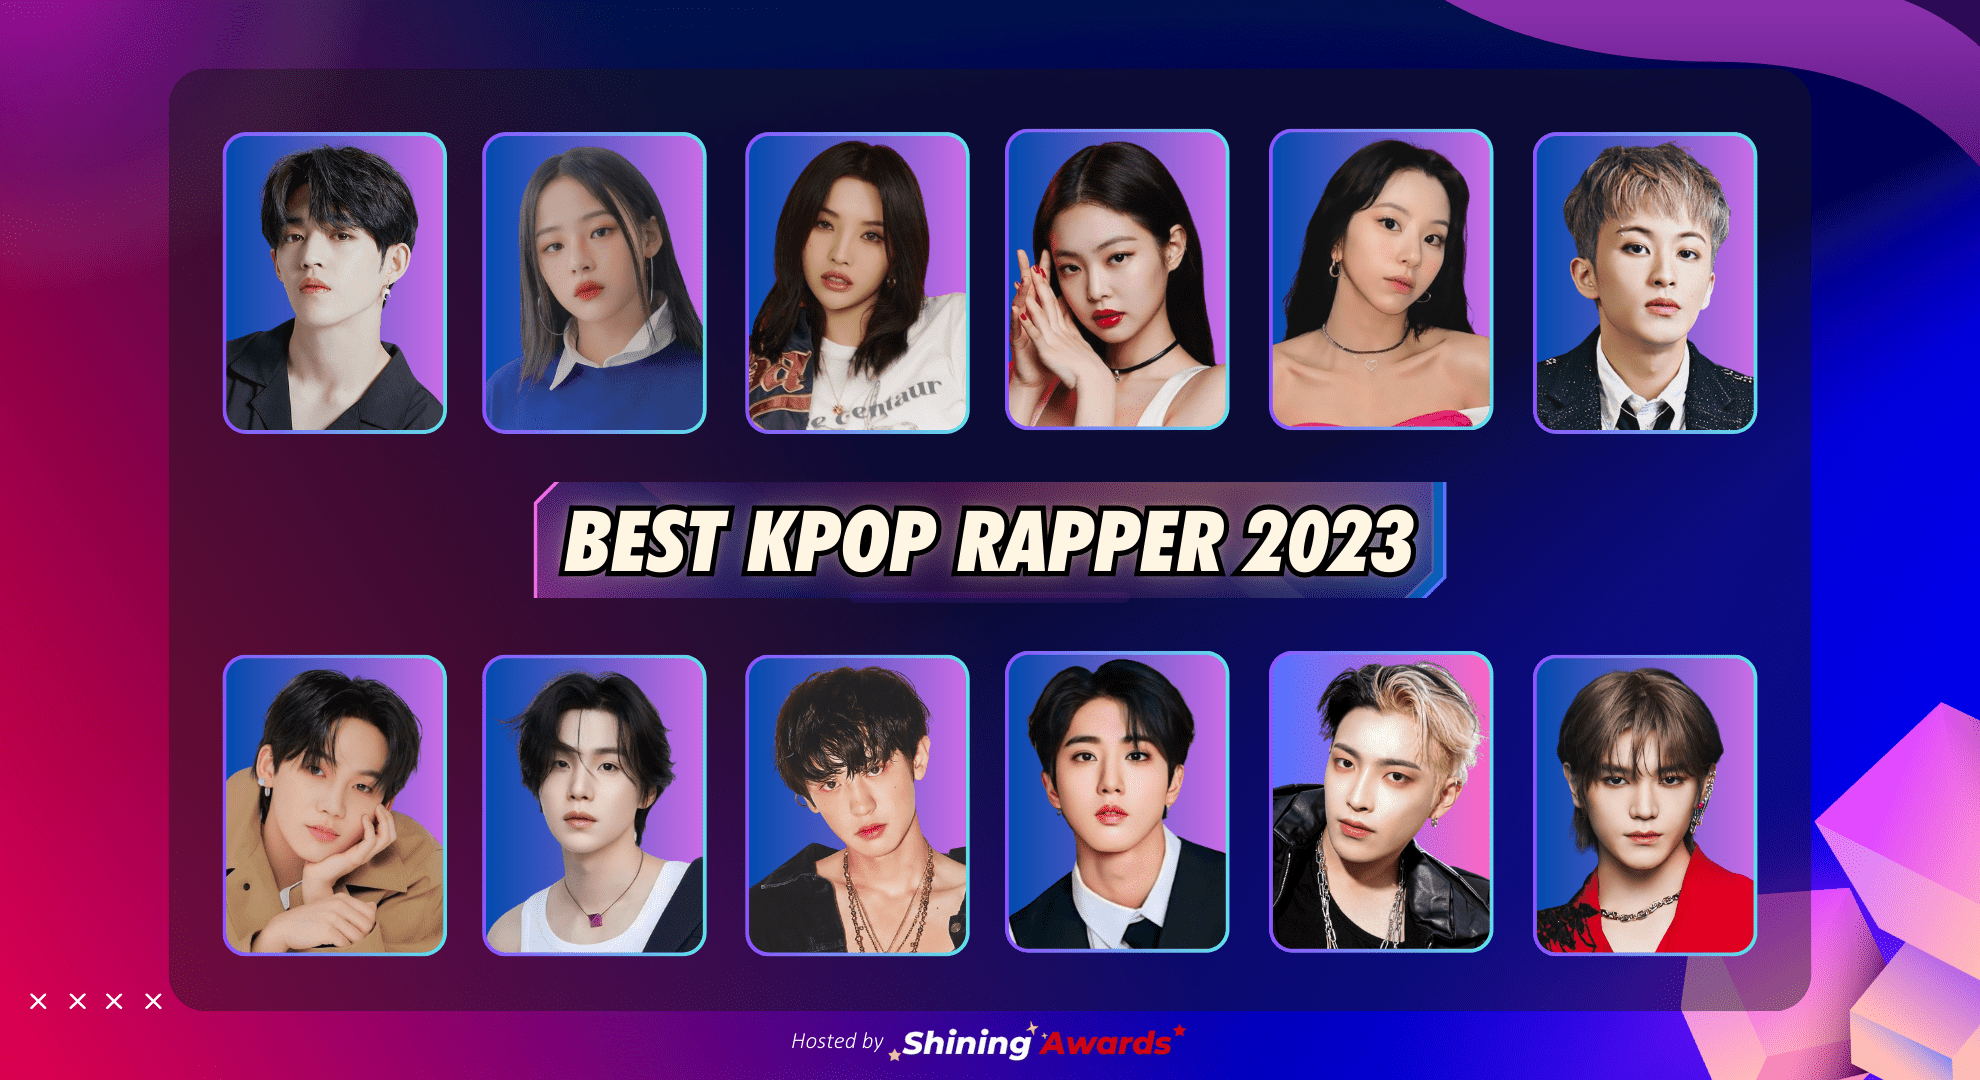 Best Kpop Rapper 2023